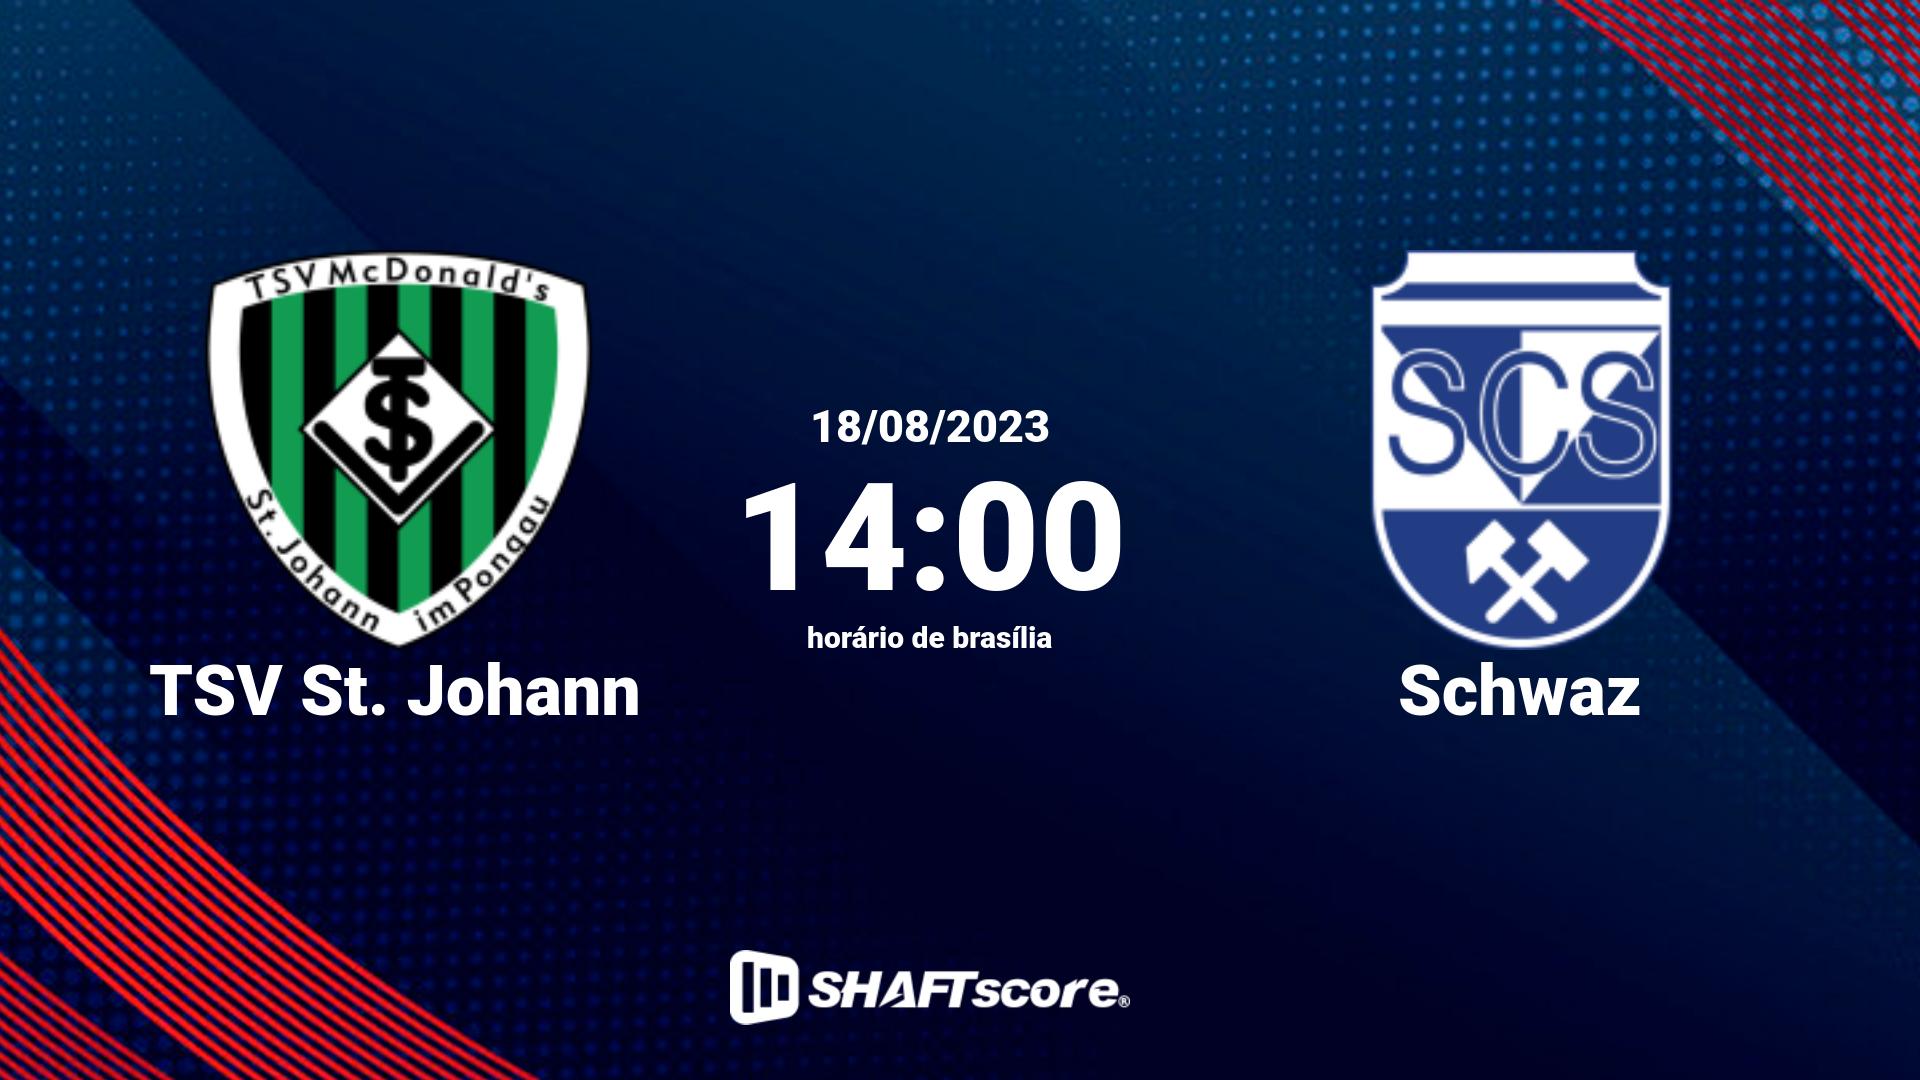 Estatísticas do jogo TSV St. Johann vs Schwaz 18.08 14:00